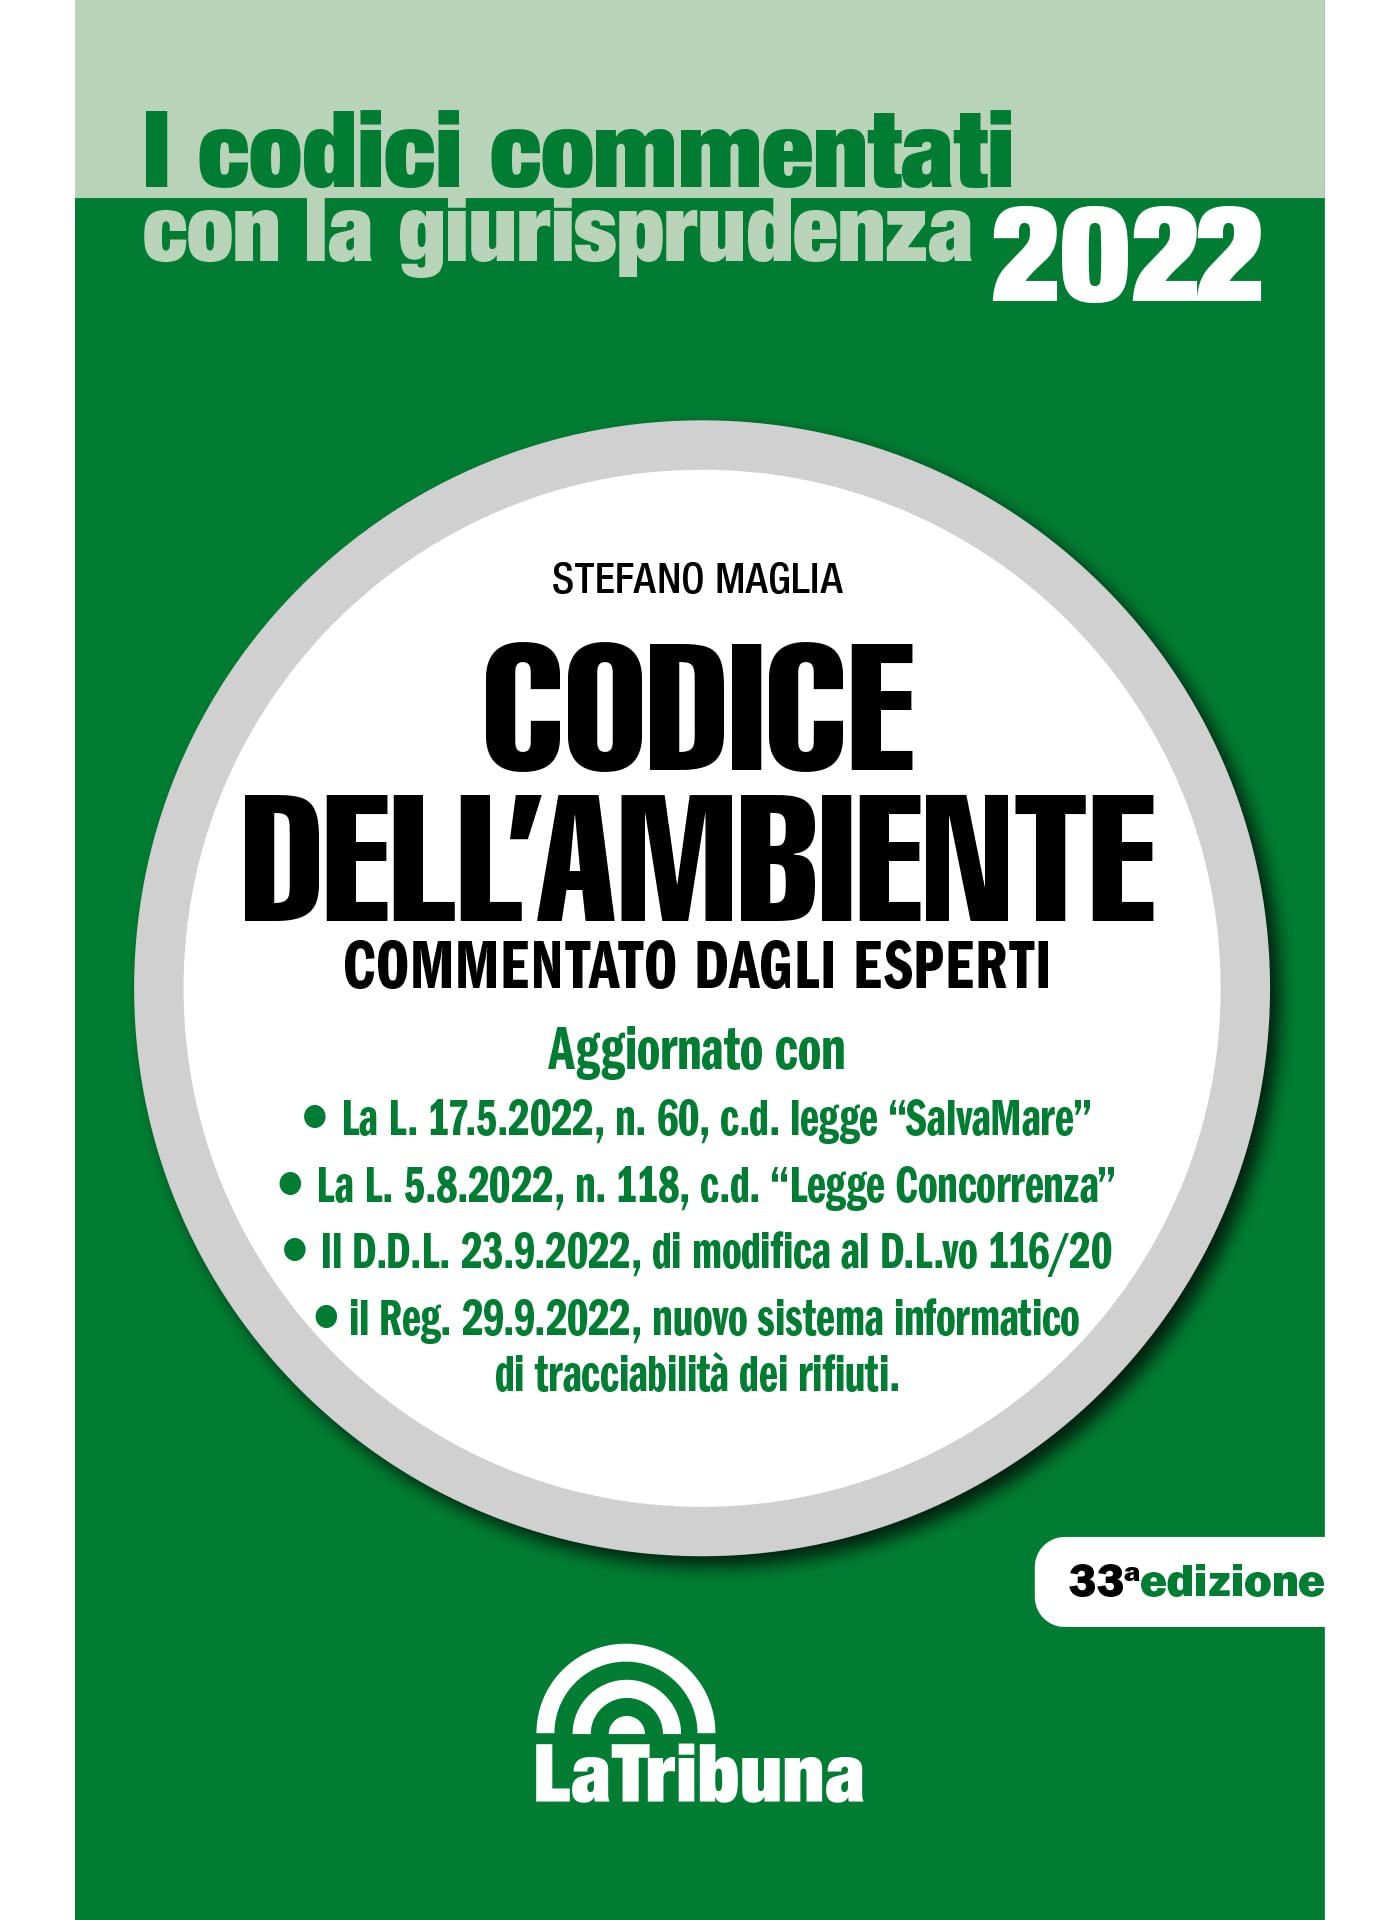 La copertina del libro Codice dellAmbiente 2022 di Stefano Maglia